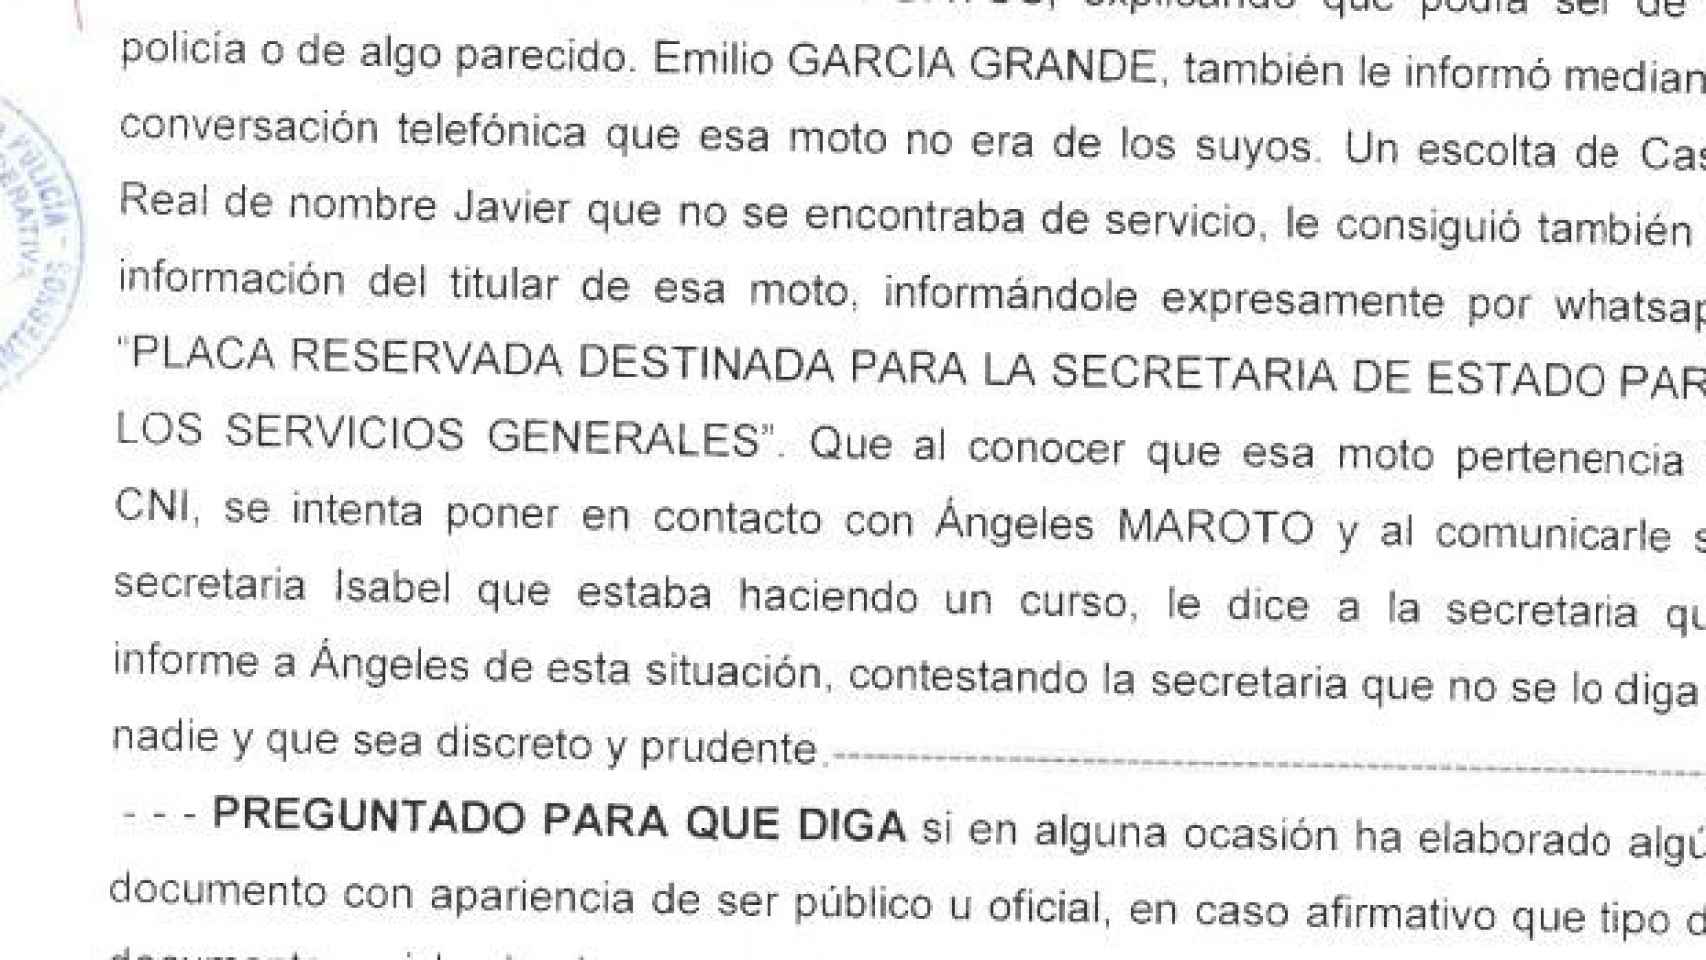 Extracto de la declaración de Francisco Nicolás Gómez Iglesias ante la Policía.